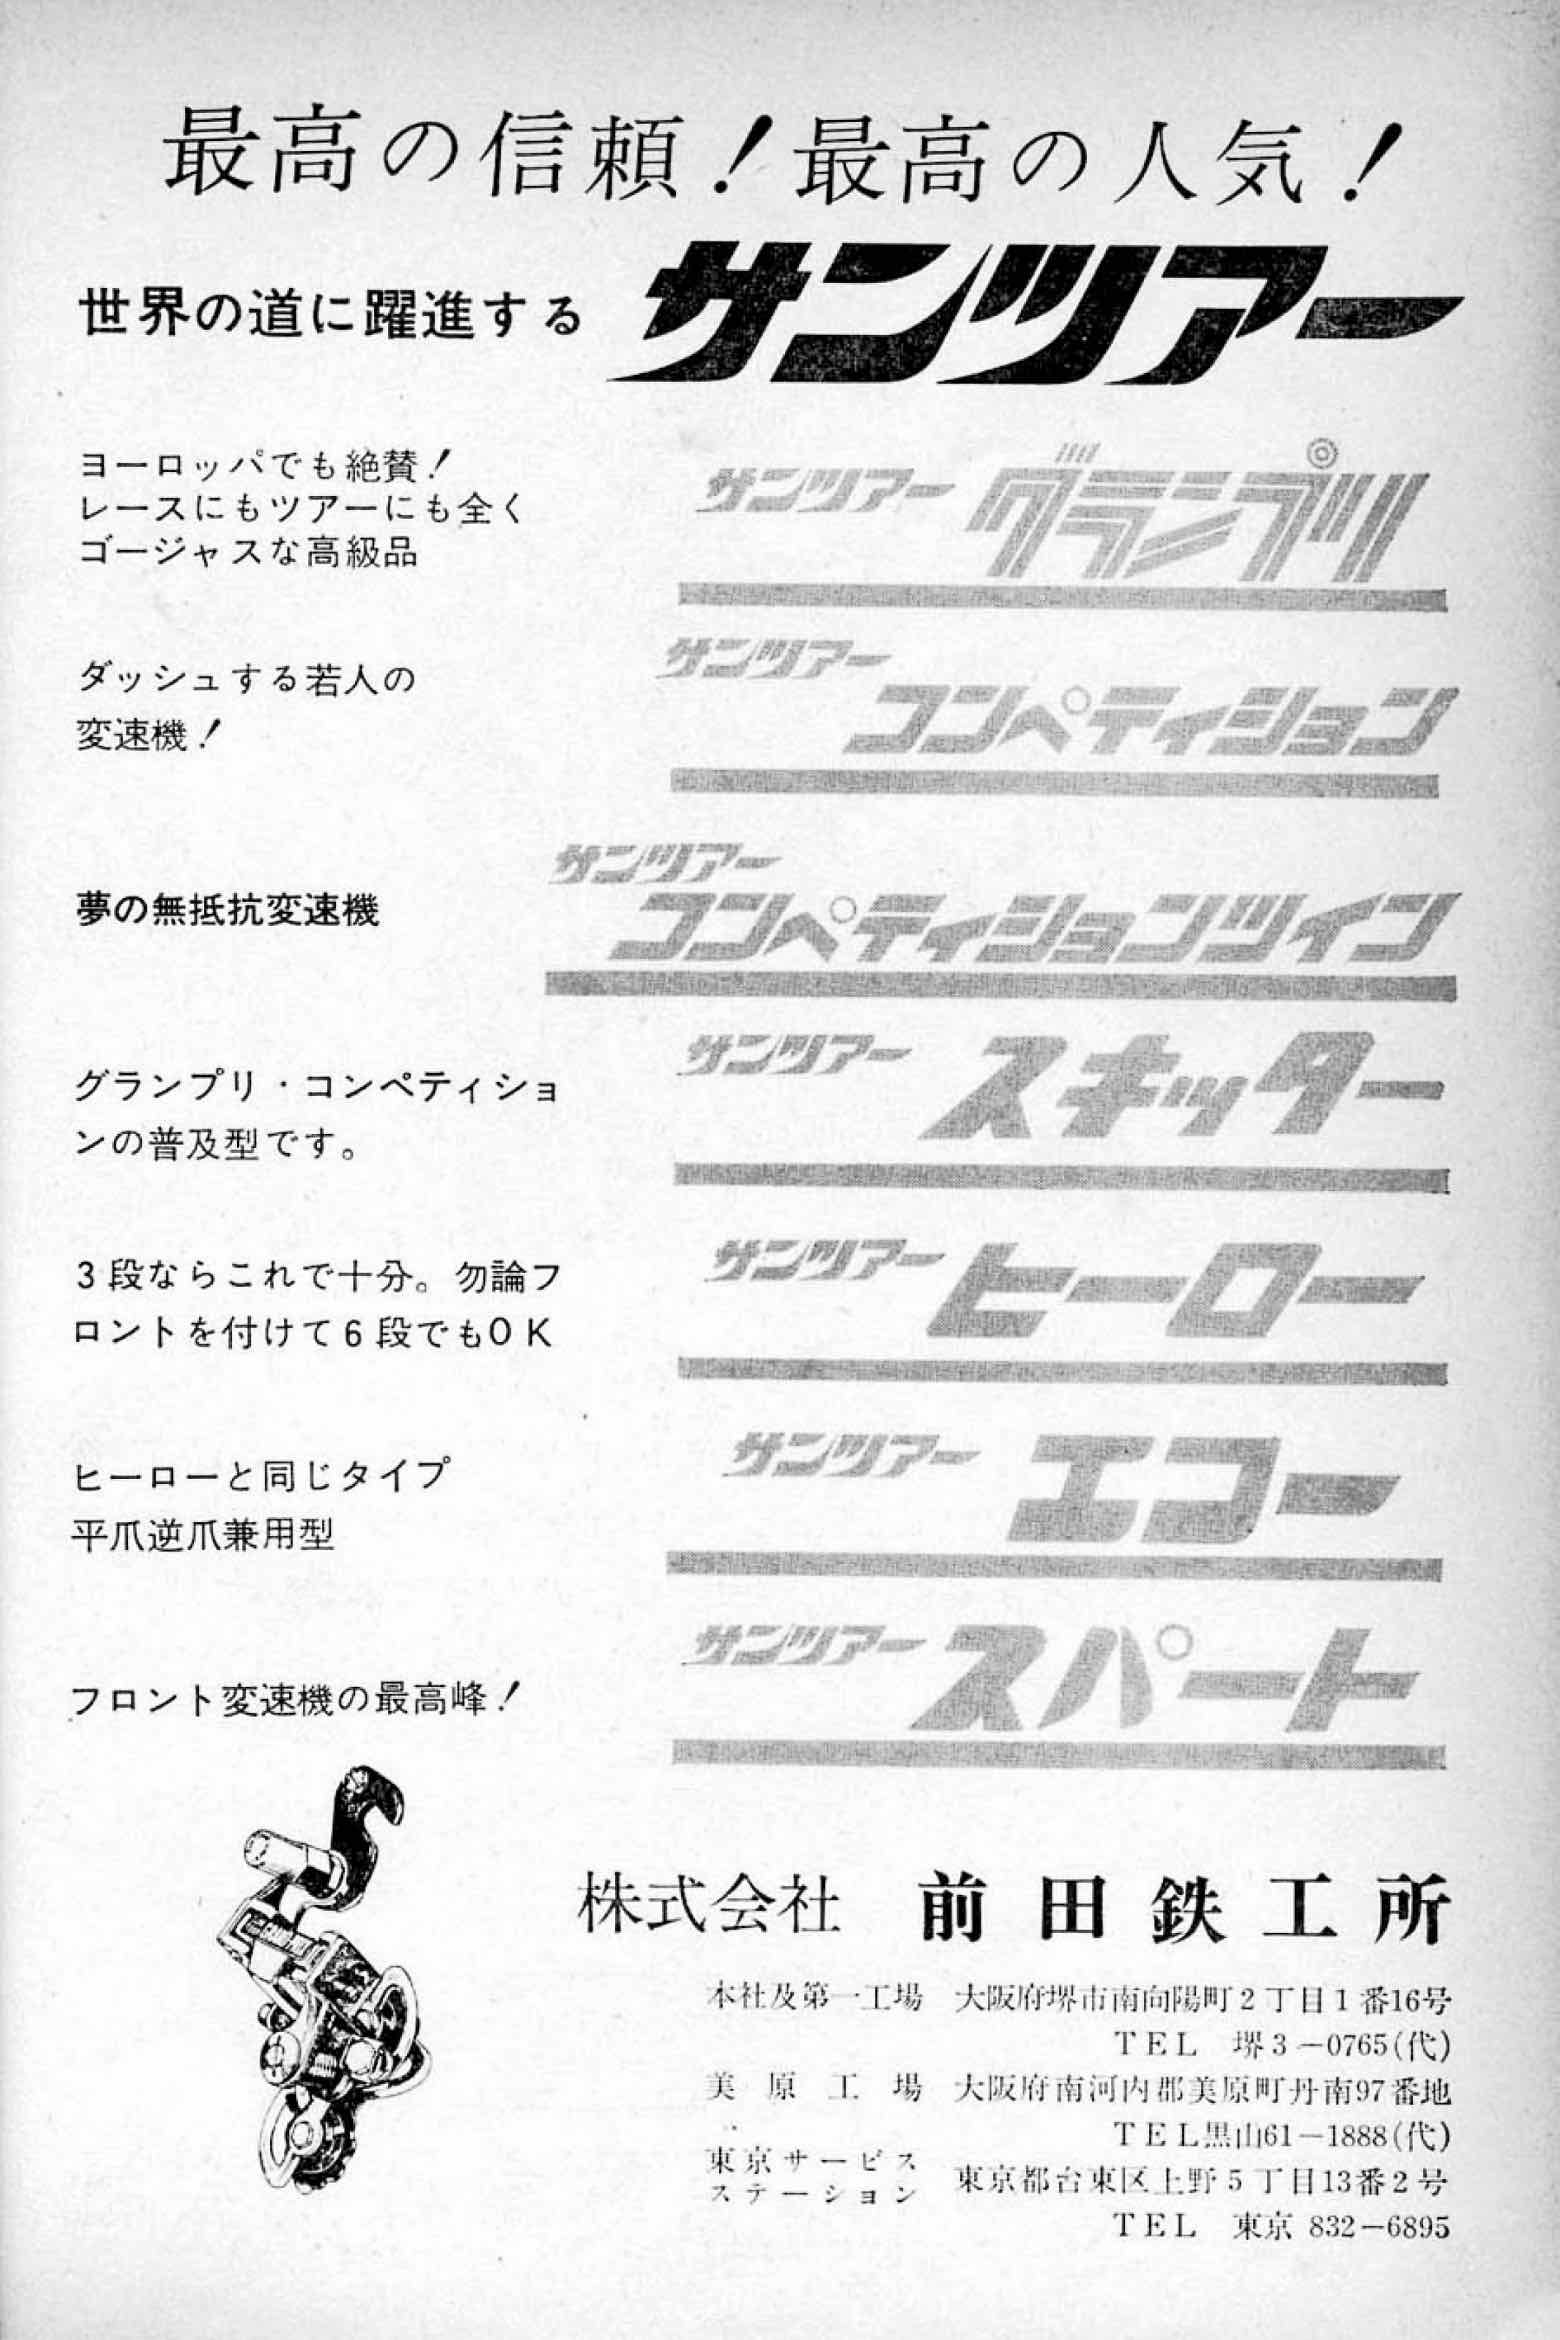 New Cycling October 1966 - SunTour advert main image